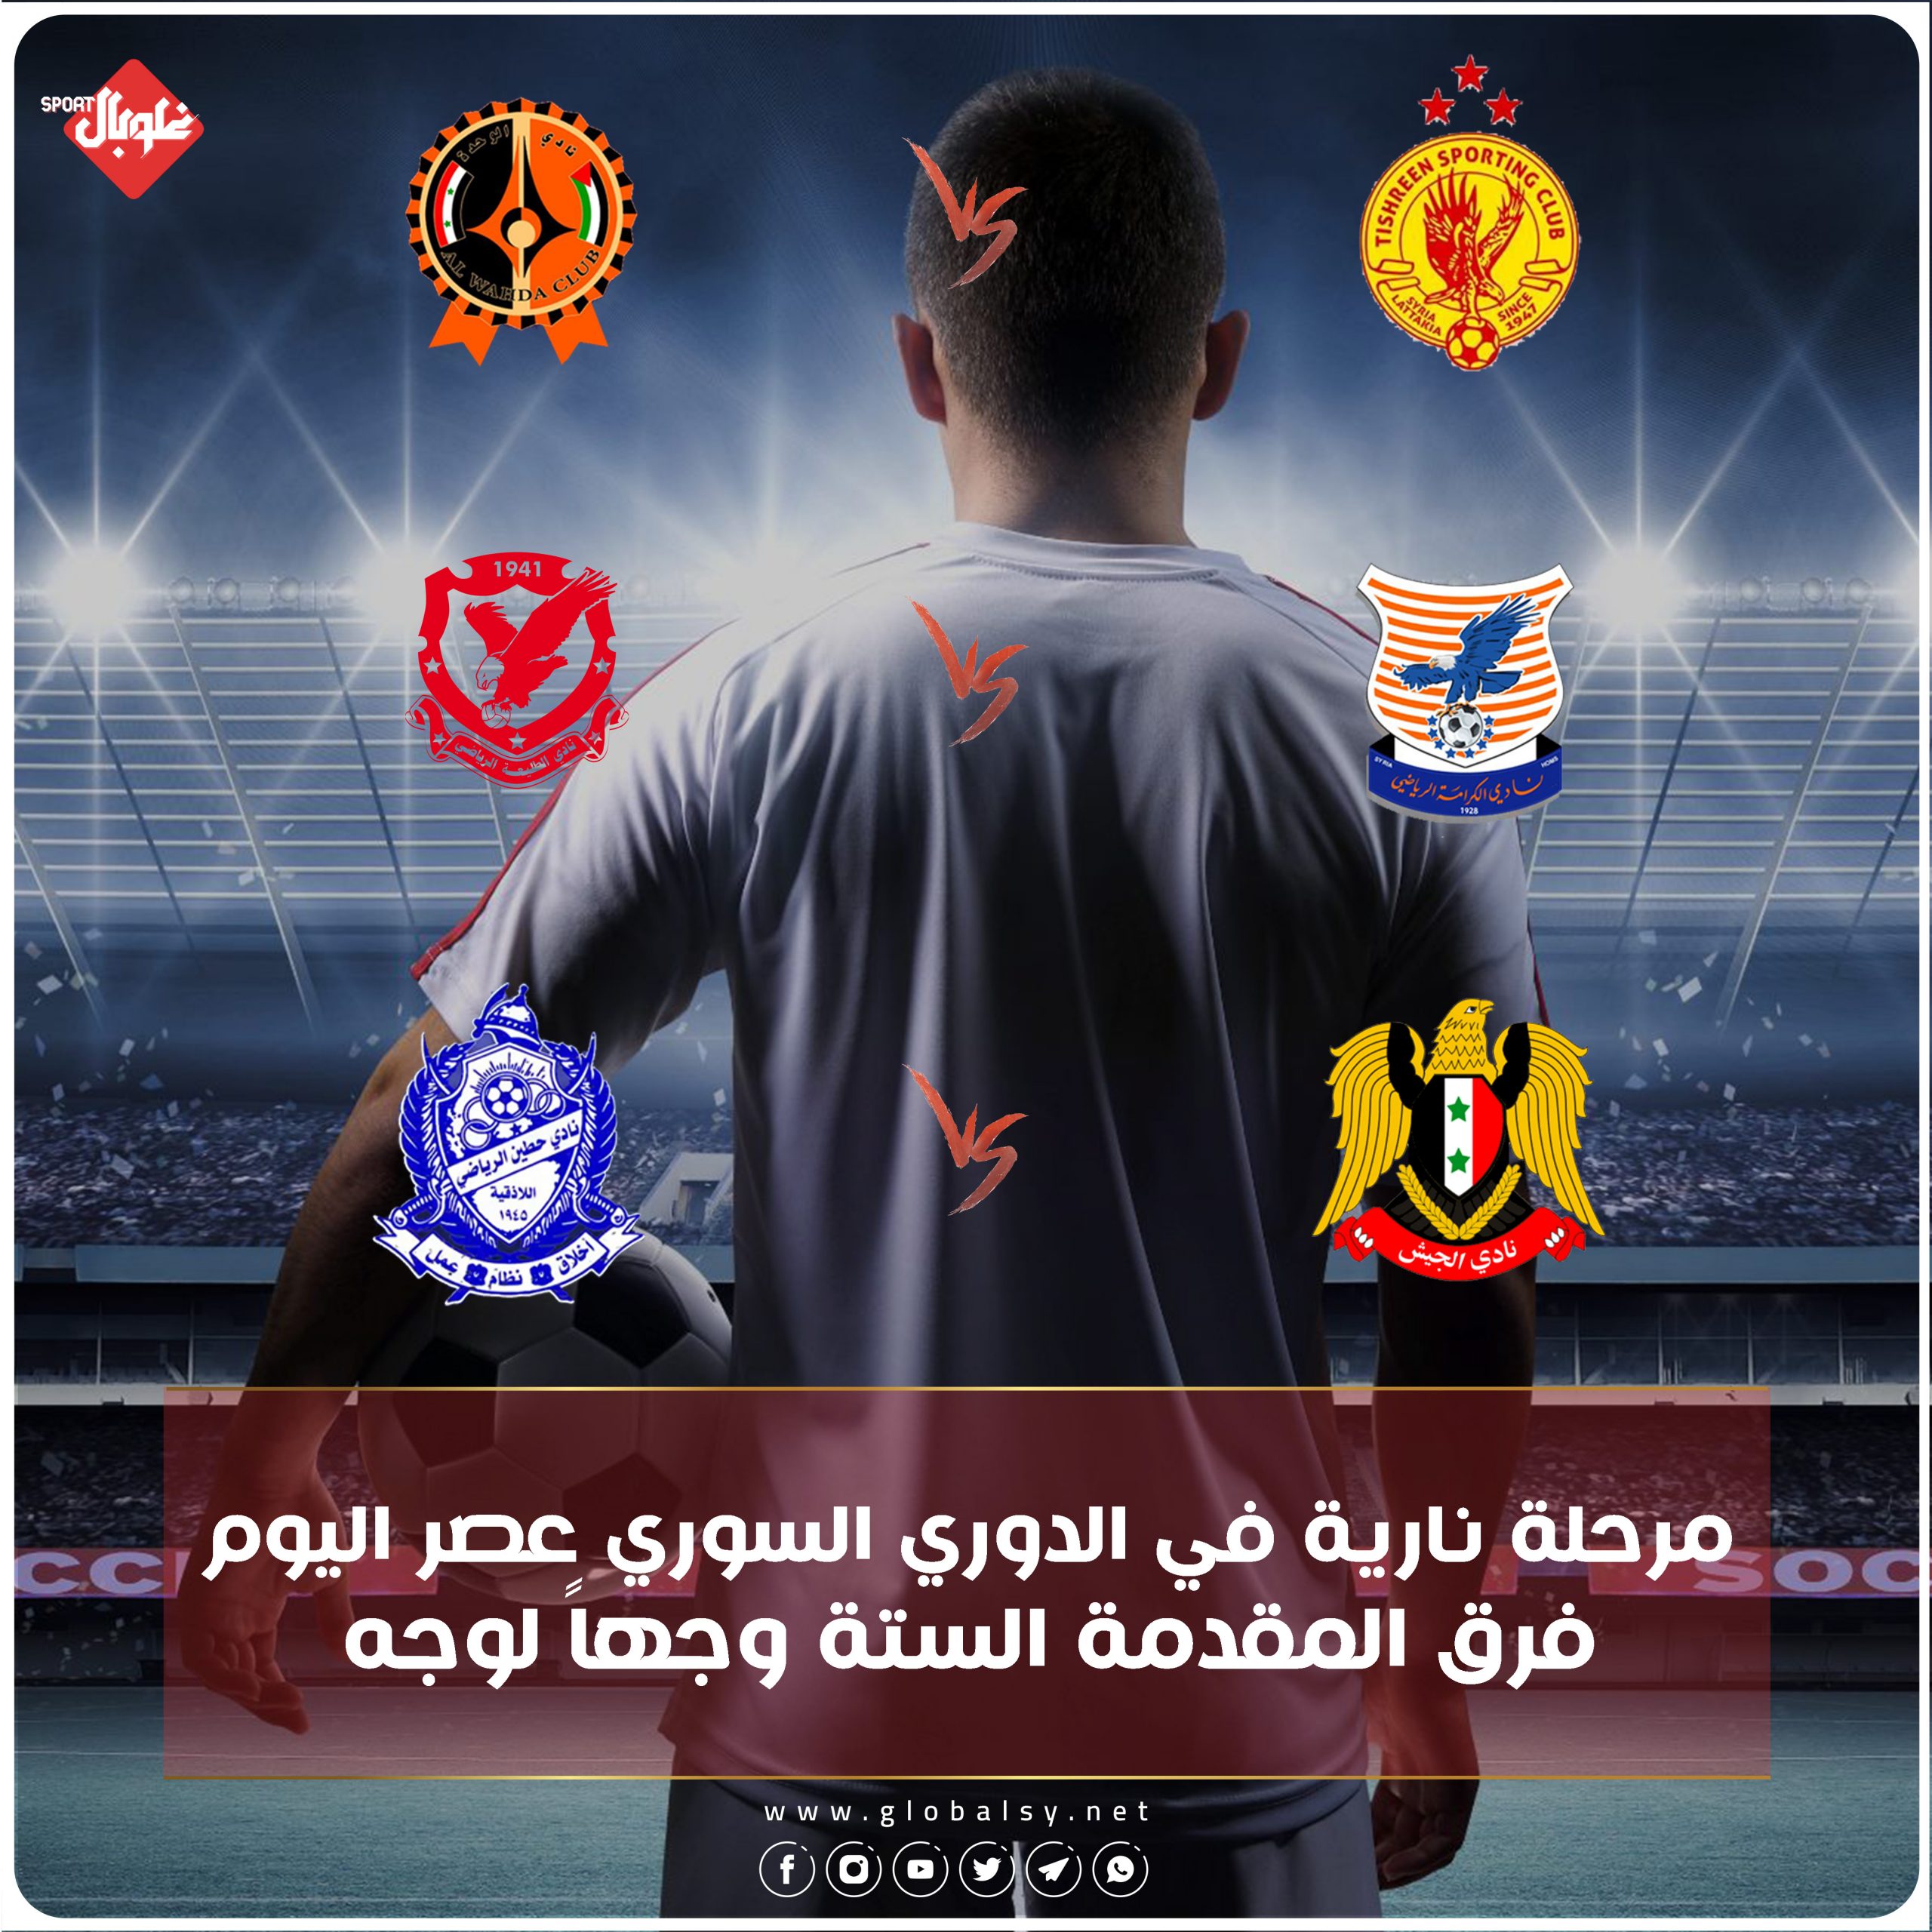 فرق المقدمة الستة وجهاً لوجه في الدوري السوري لكرة القدم